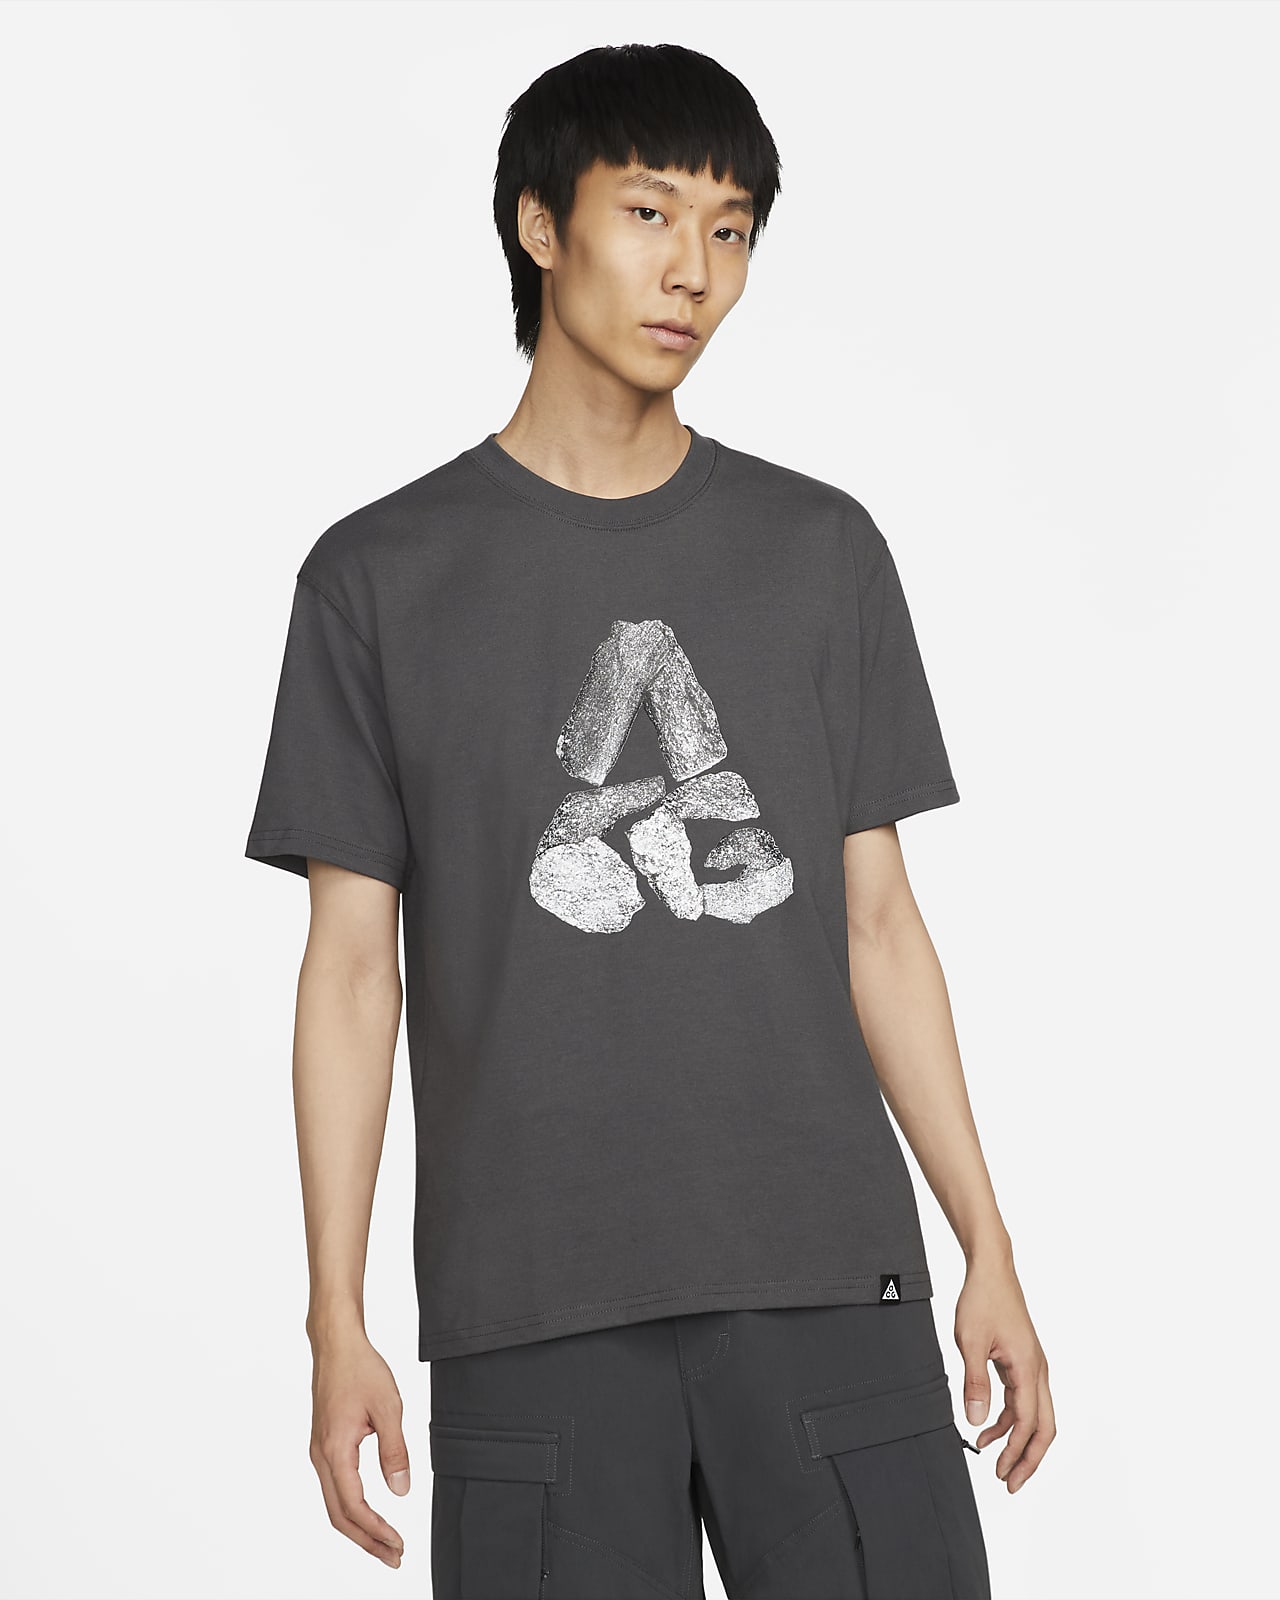 Nike ACG 'Monolithic' Men's T-Shirt